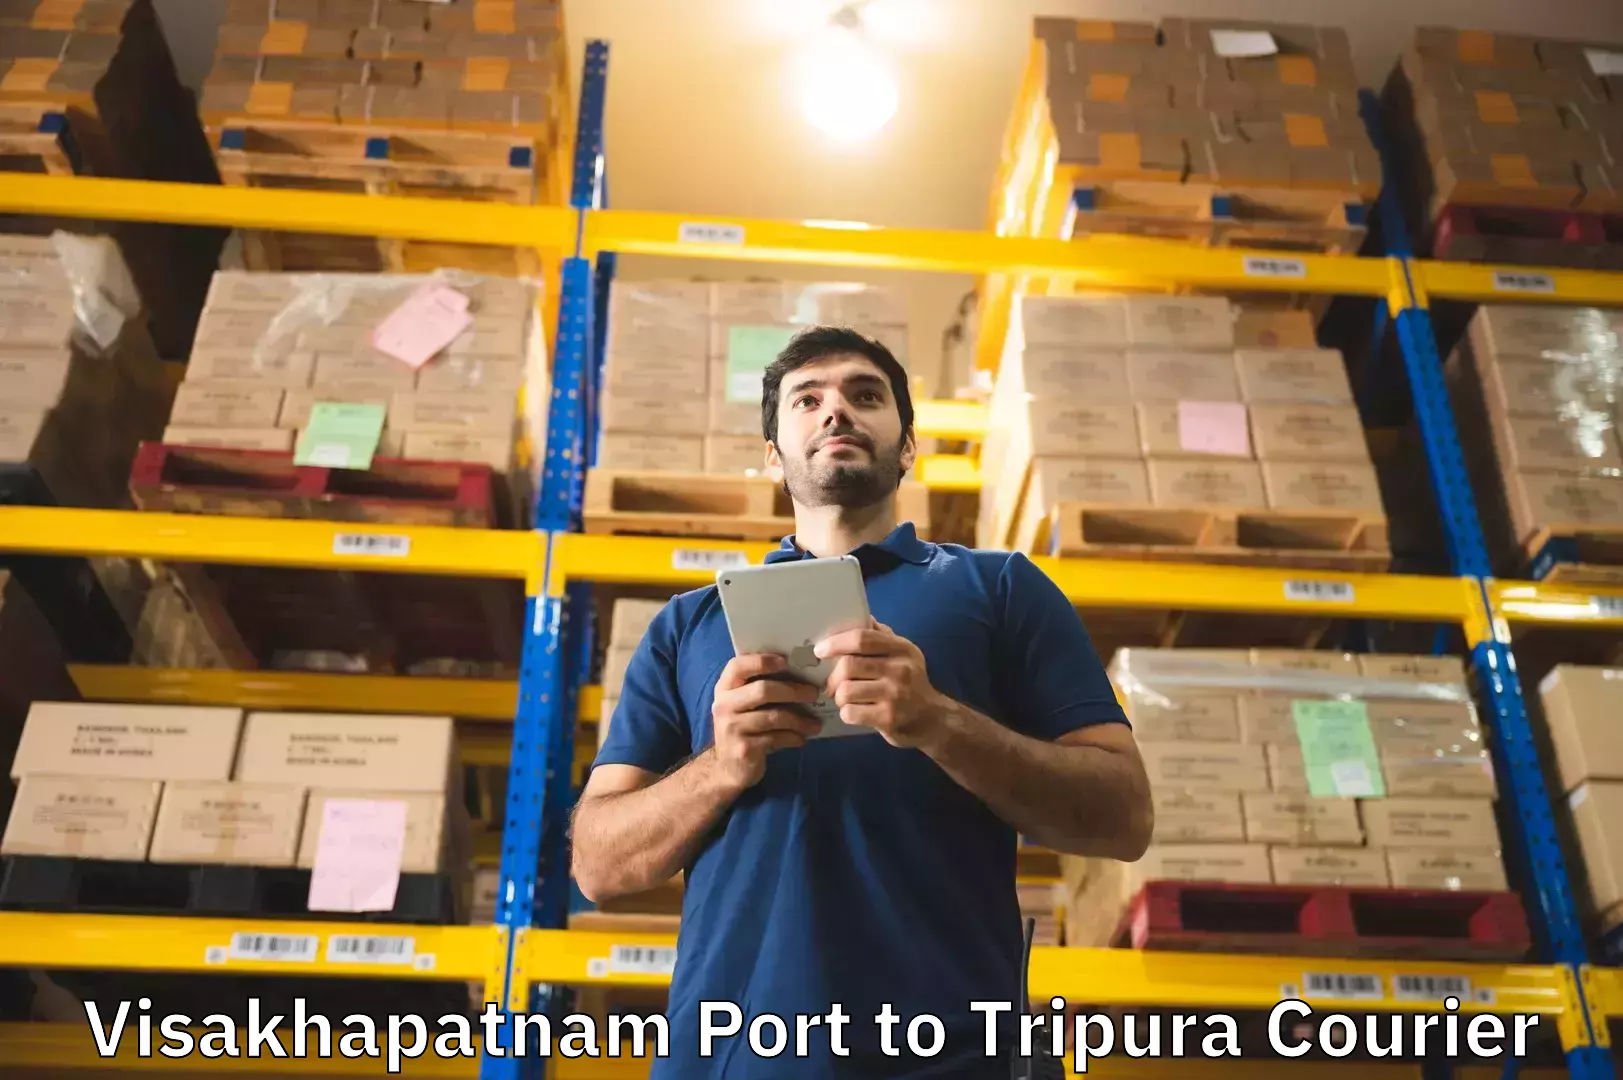 Luggage transport service Visakhapatnam Port to Manughat